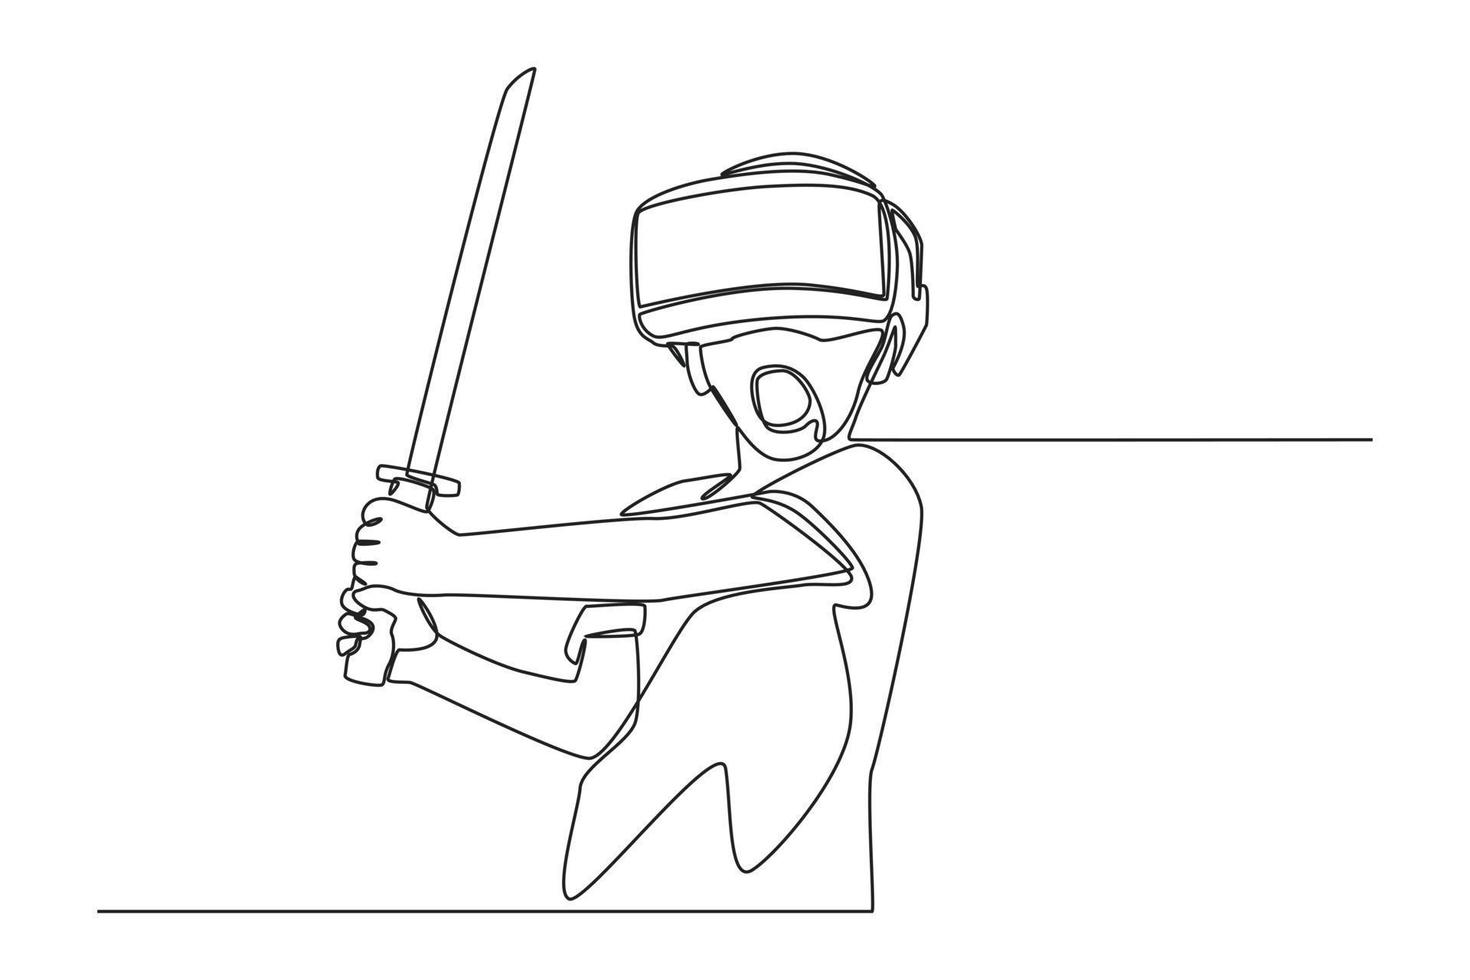 en kontinuerlig linjeteckning av barn som spelar virtuellt spel med vr-glasögon och långt svärd. virtuellt spelkoncept. enda rad rita design vektorgrafisk illustration. vektor